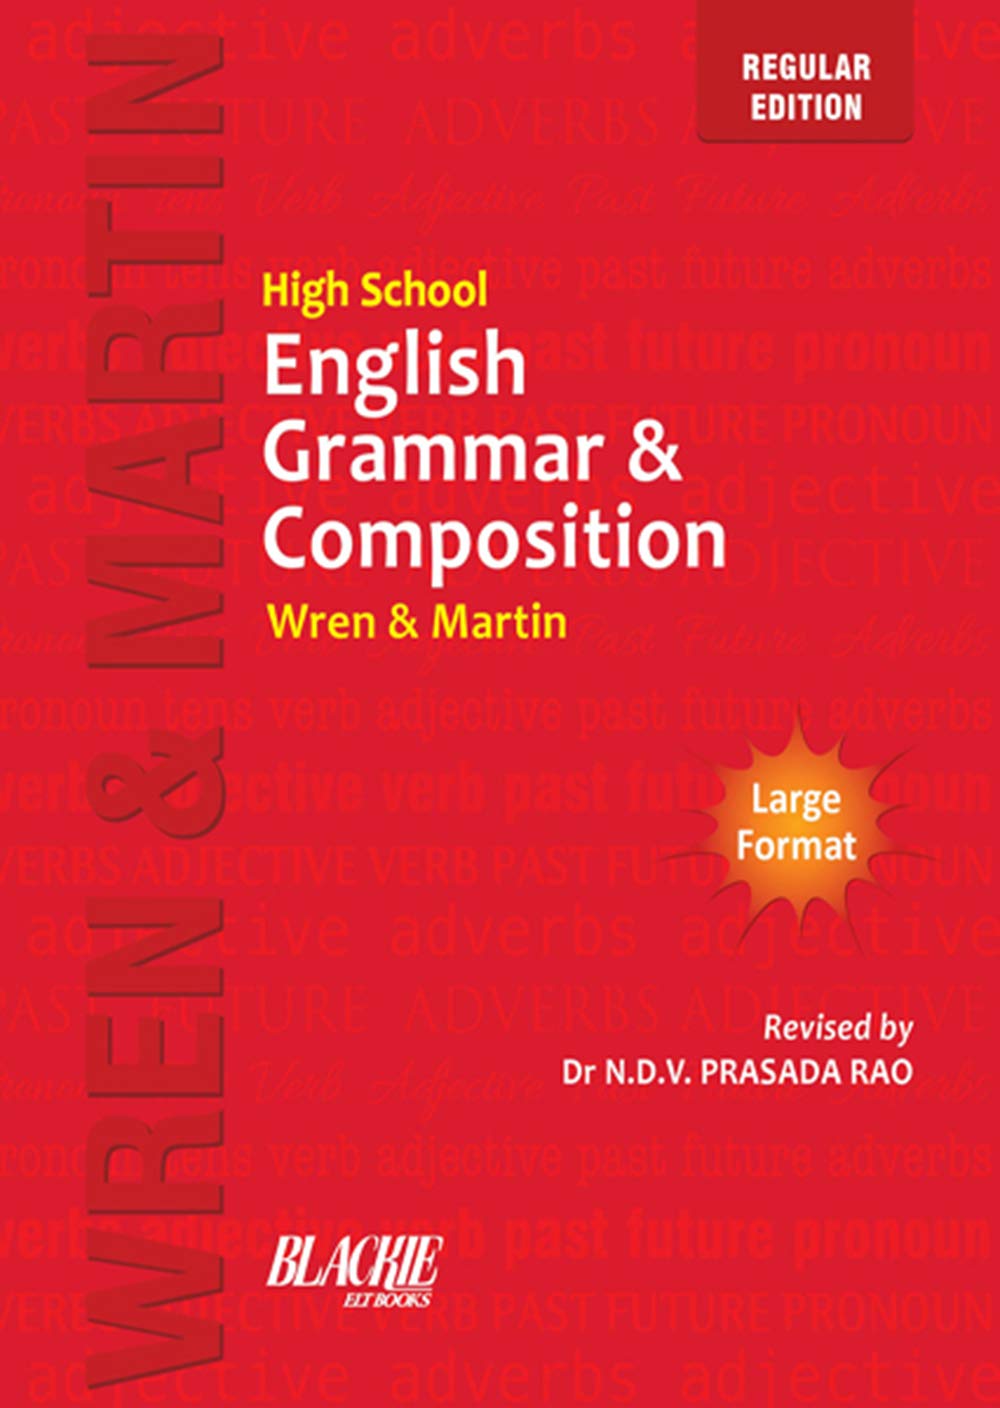 wren-martin-high-school-english-grammar-and-composition-book-second-hand-books-snatch-books